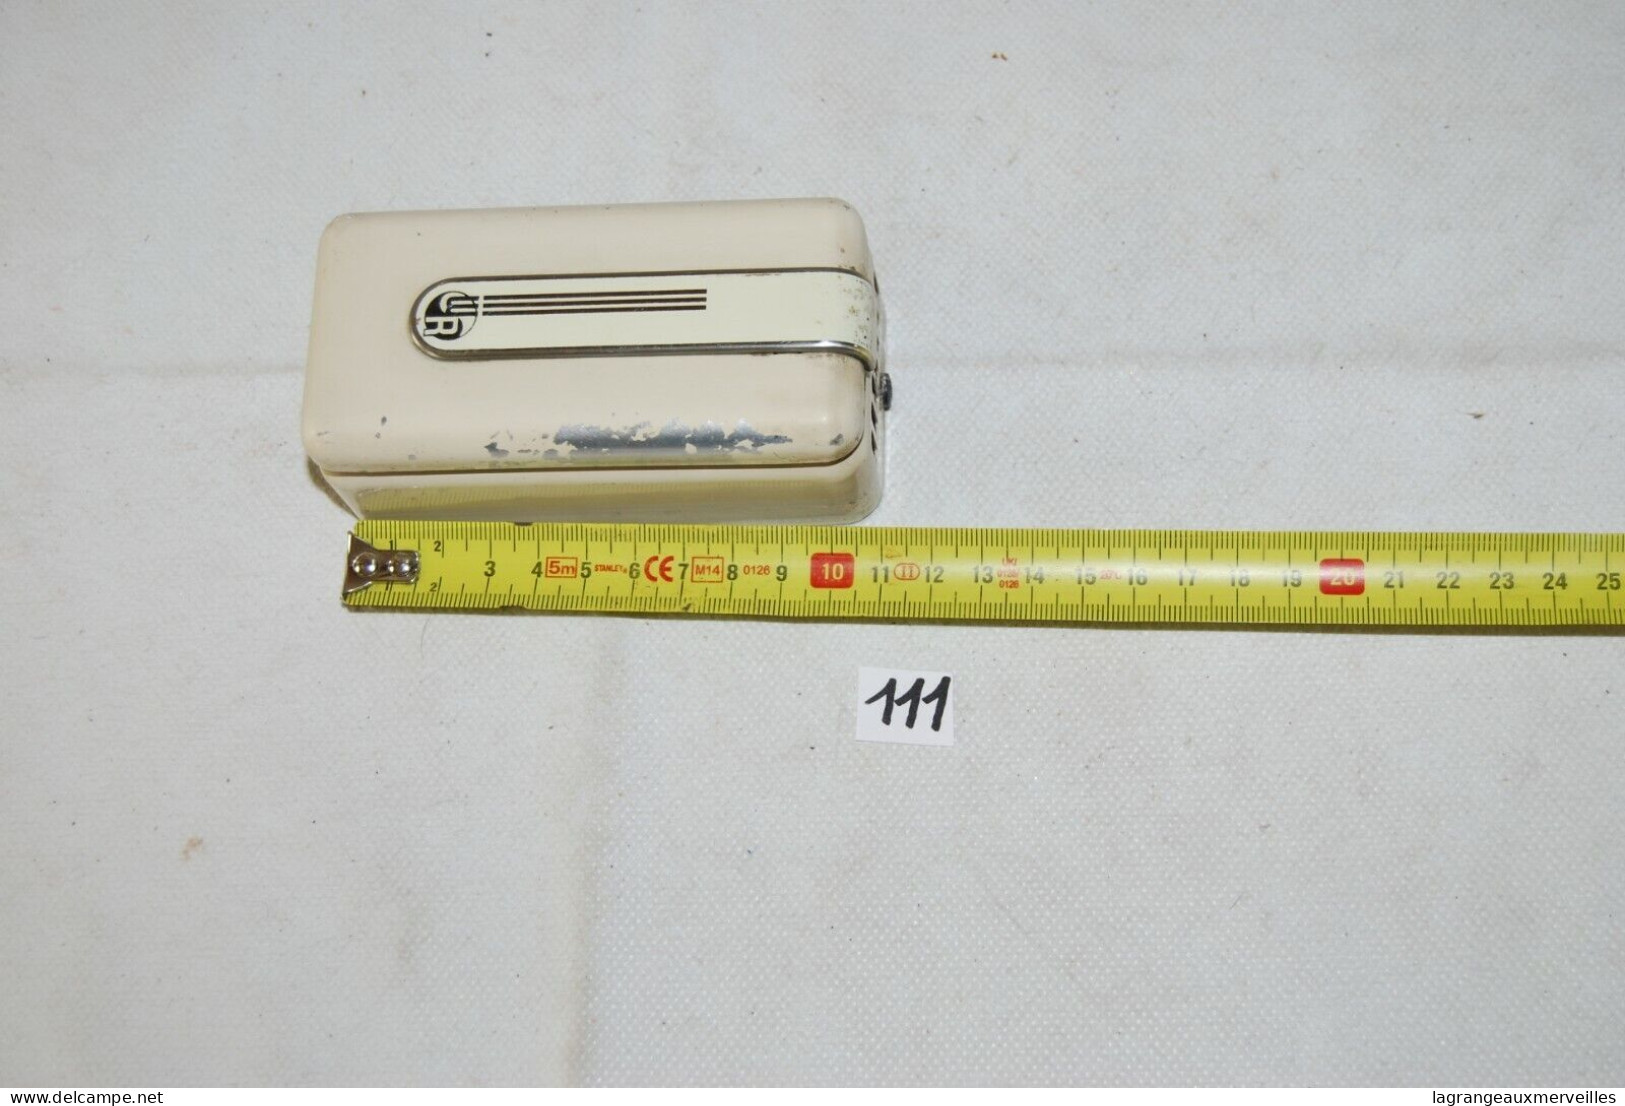 C111 Ancien Thermomètre - Remontoir - Minuterie - Other Apparatus